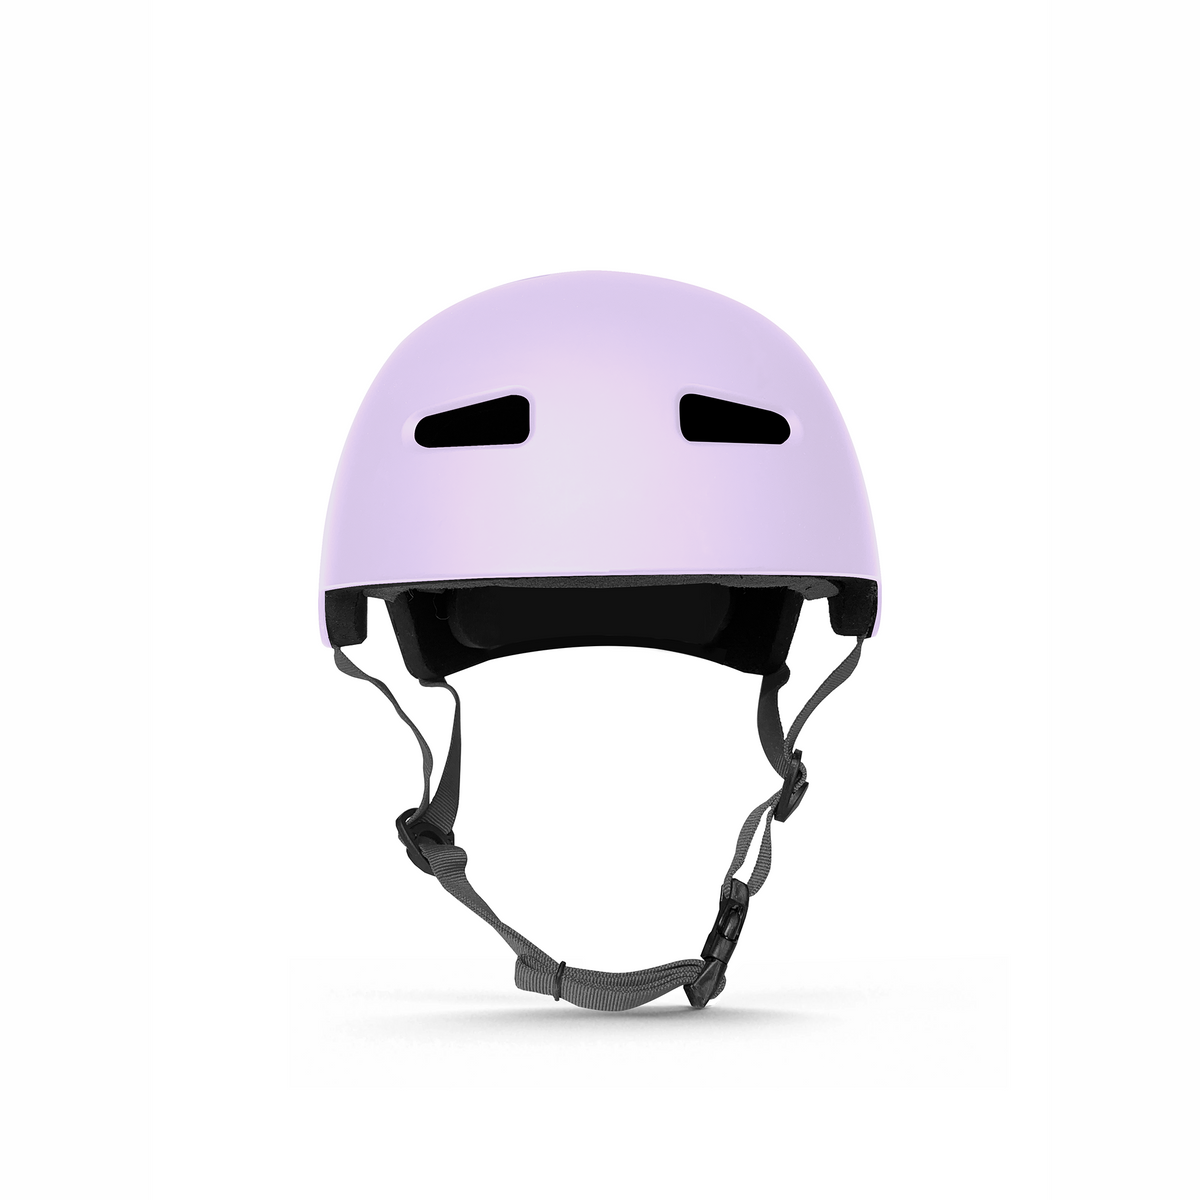 Fairmont Certified Helmet